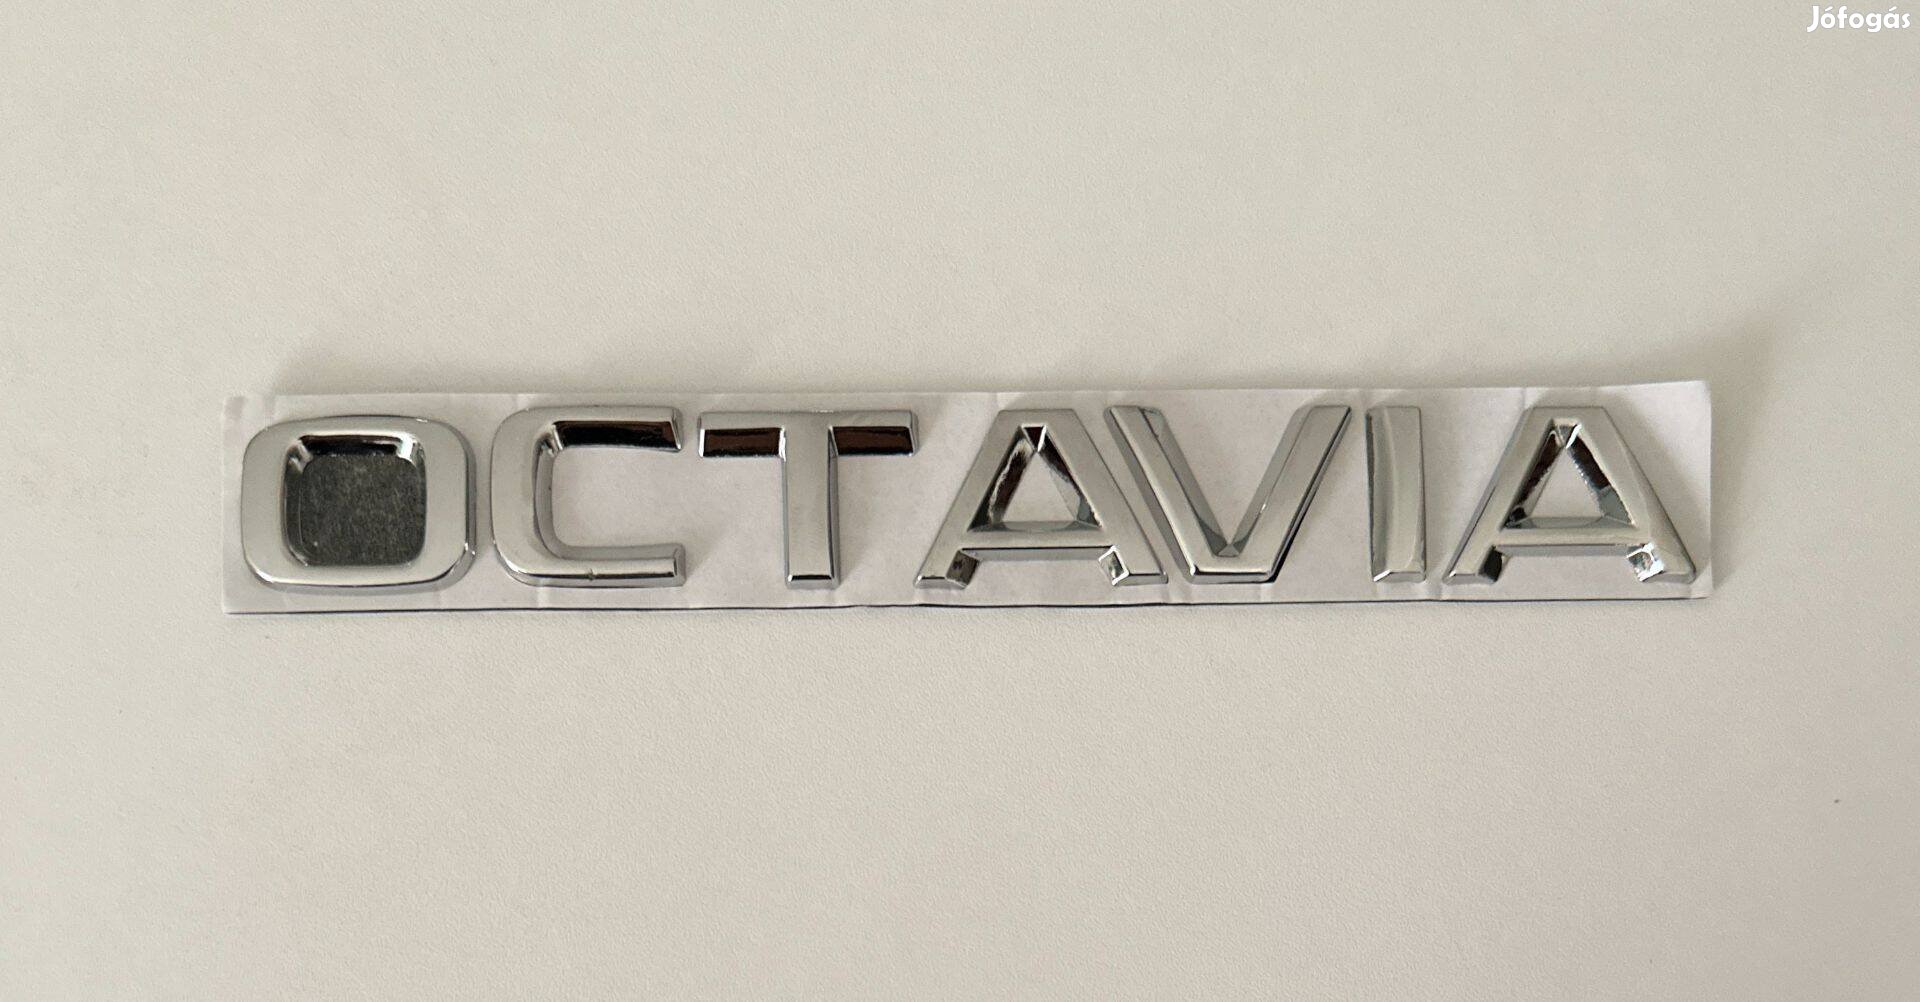 Új Skoda Octavia felirat embléma jel logó kiegészítő gépház csomagtér